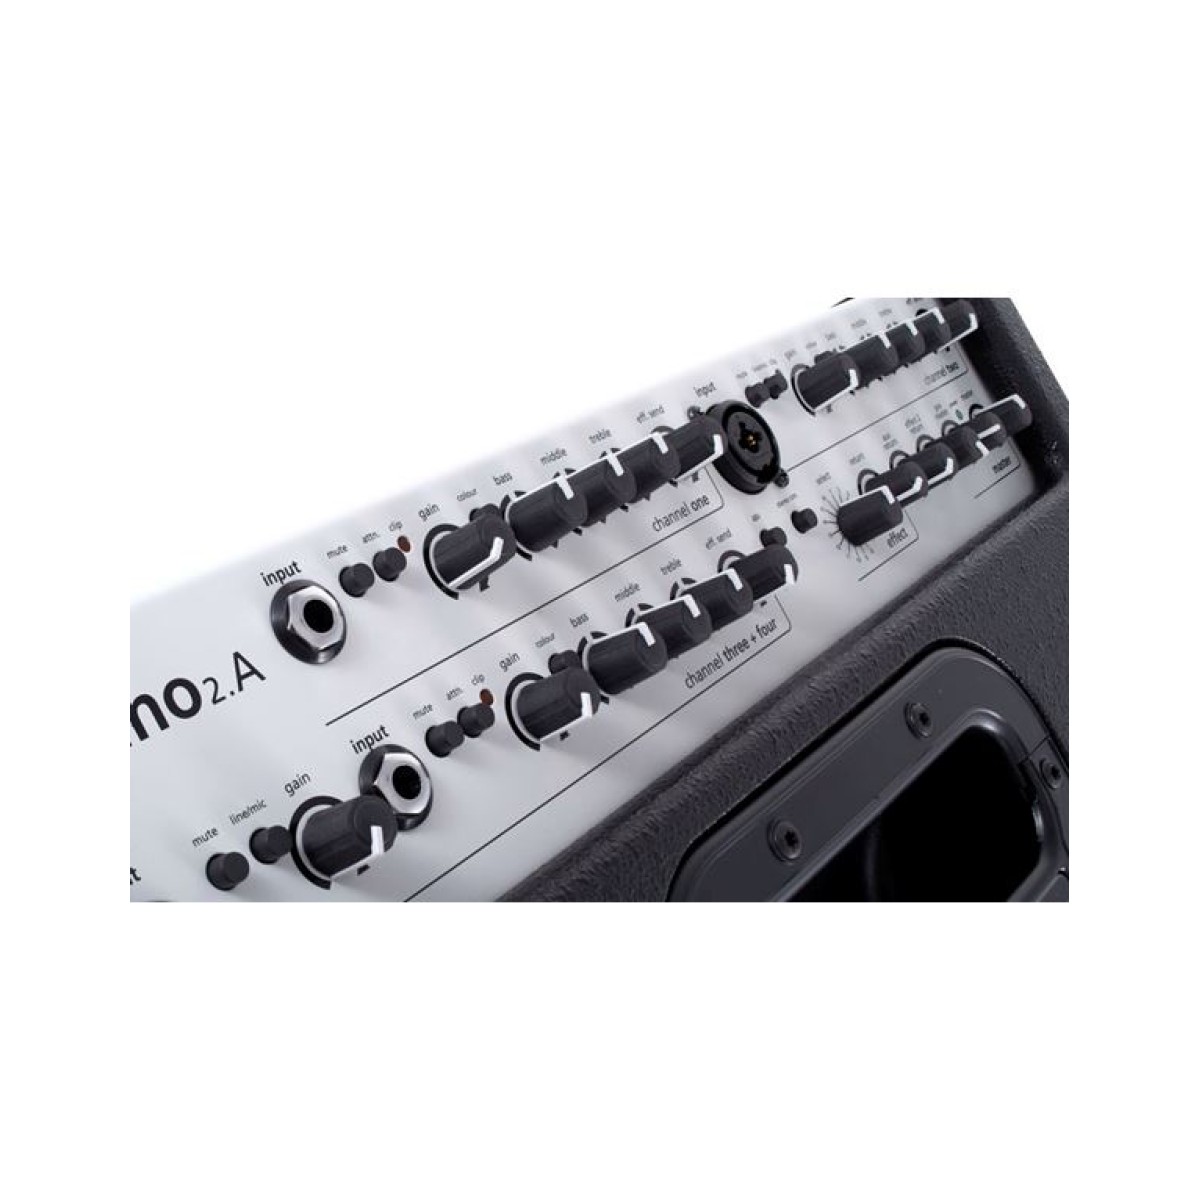 AER Domino 2A Black Ενισχυτής Ακουστικών Οργάνων 2 x 60  Watt